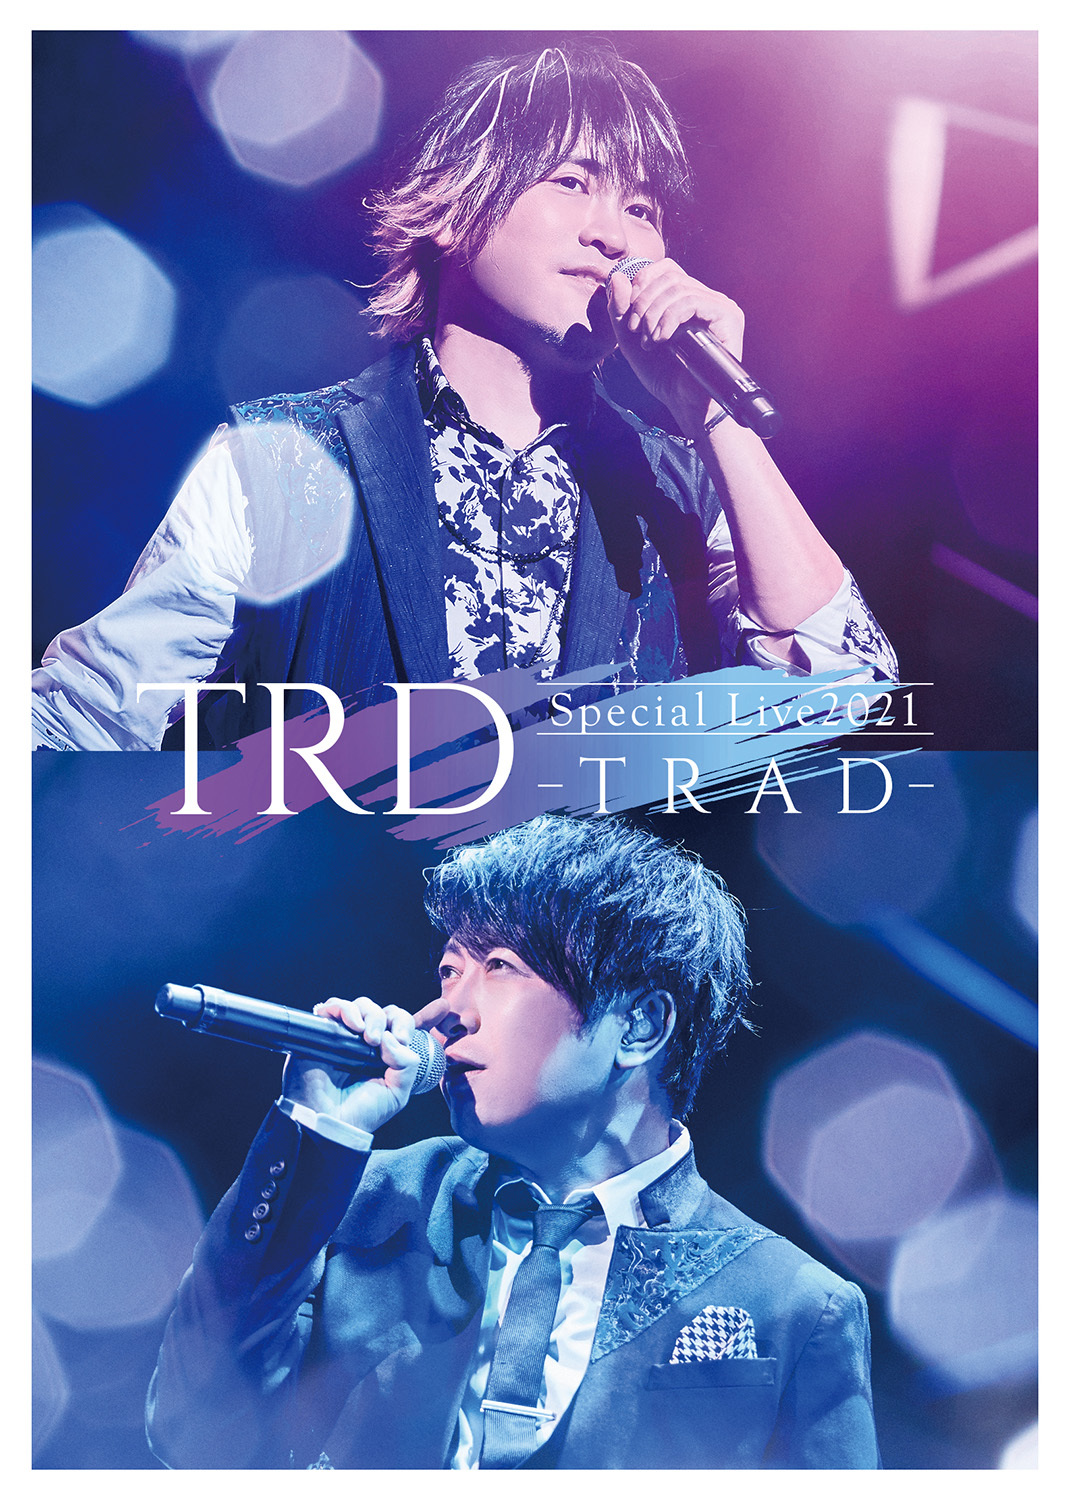 近藤孝行と小野大輔のユニットTRD、初ライブイベント『TRD Special 